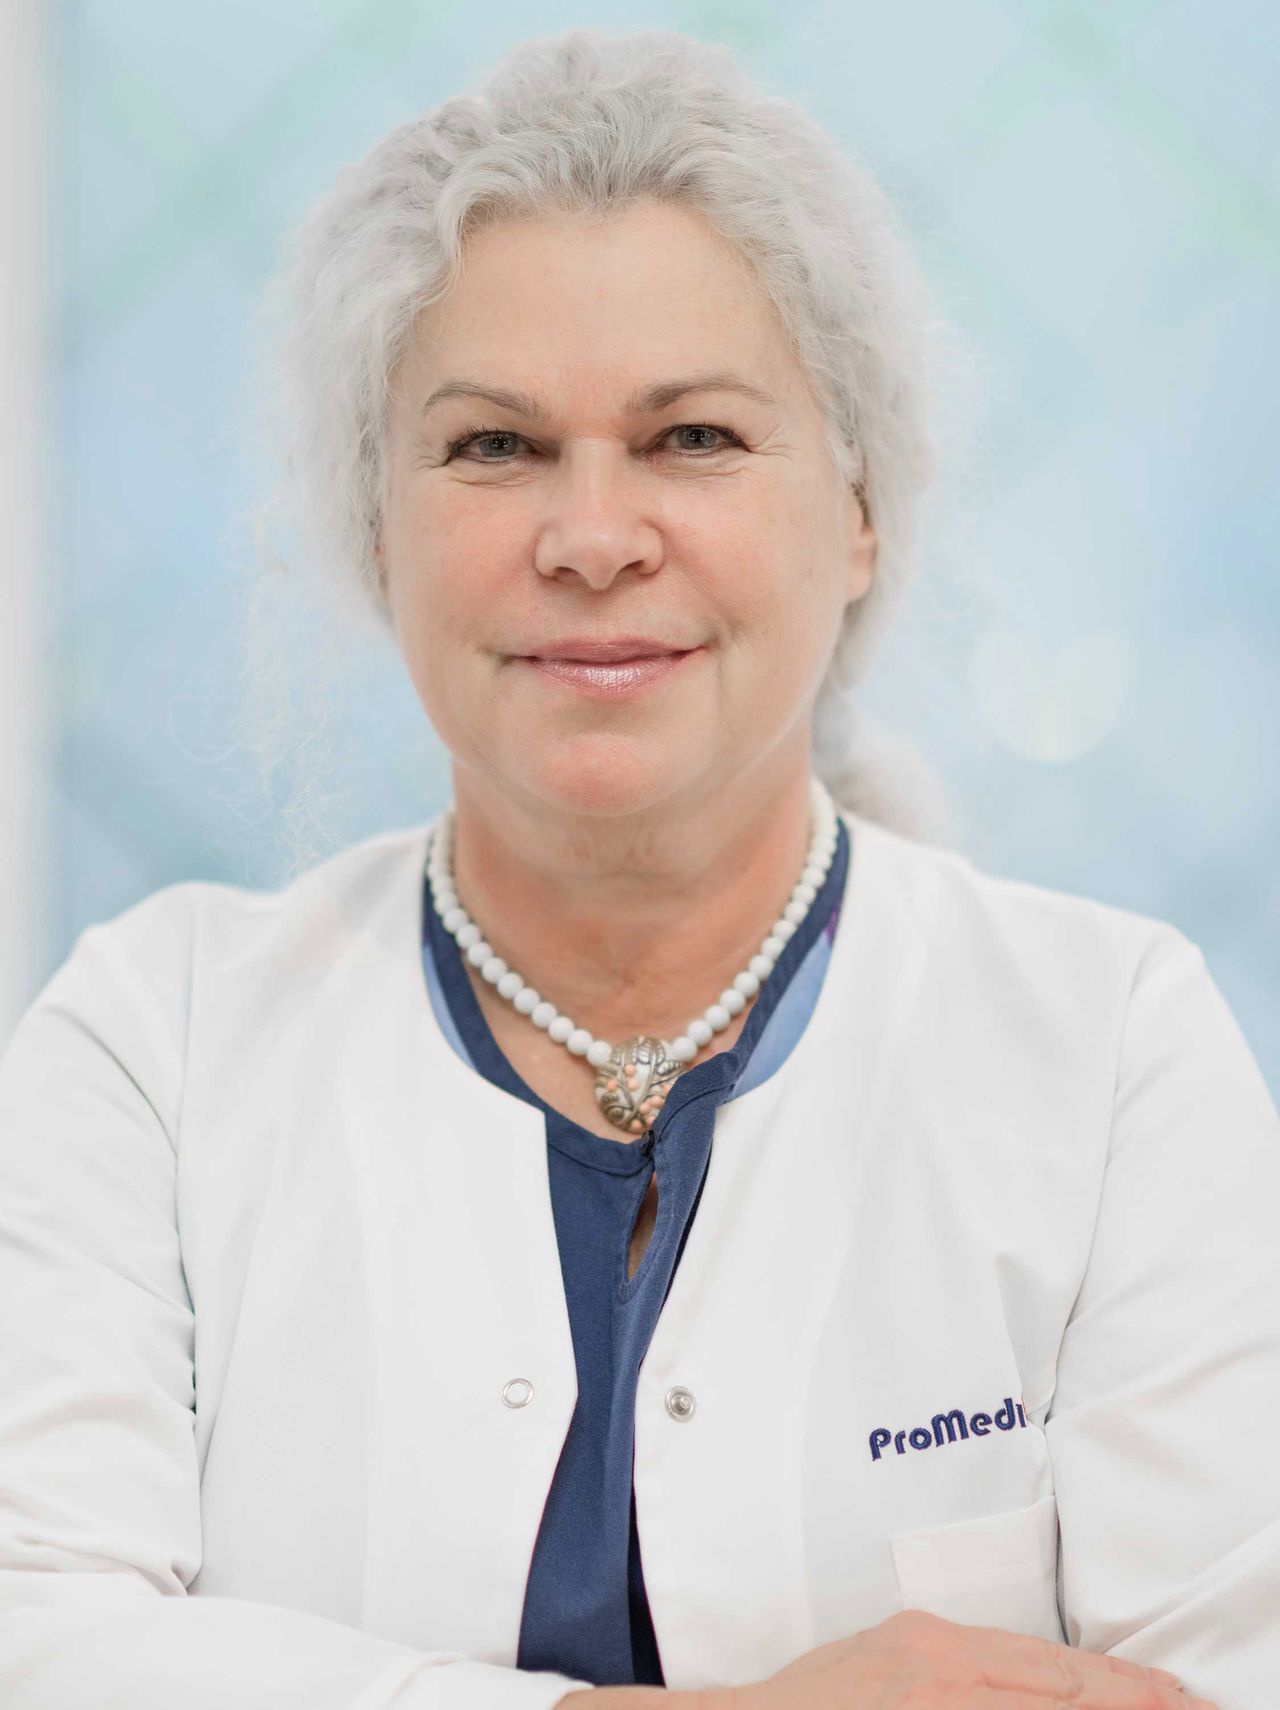 dr n. med. Małgorzata Chomicka-Janda, specjalista chirurgii plastycznej
w Klinice Promedion, www.klinikapromedion.pl